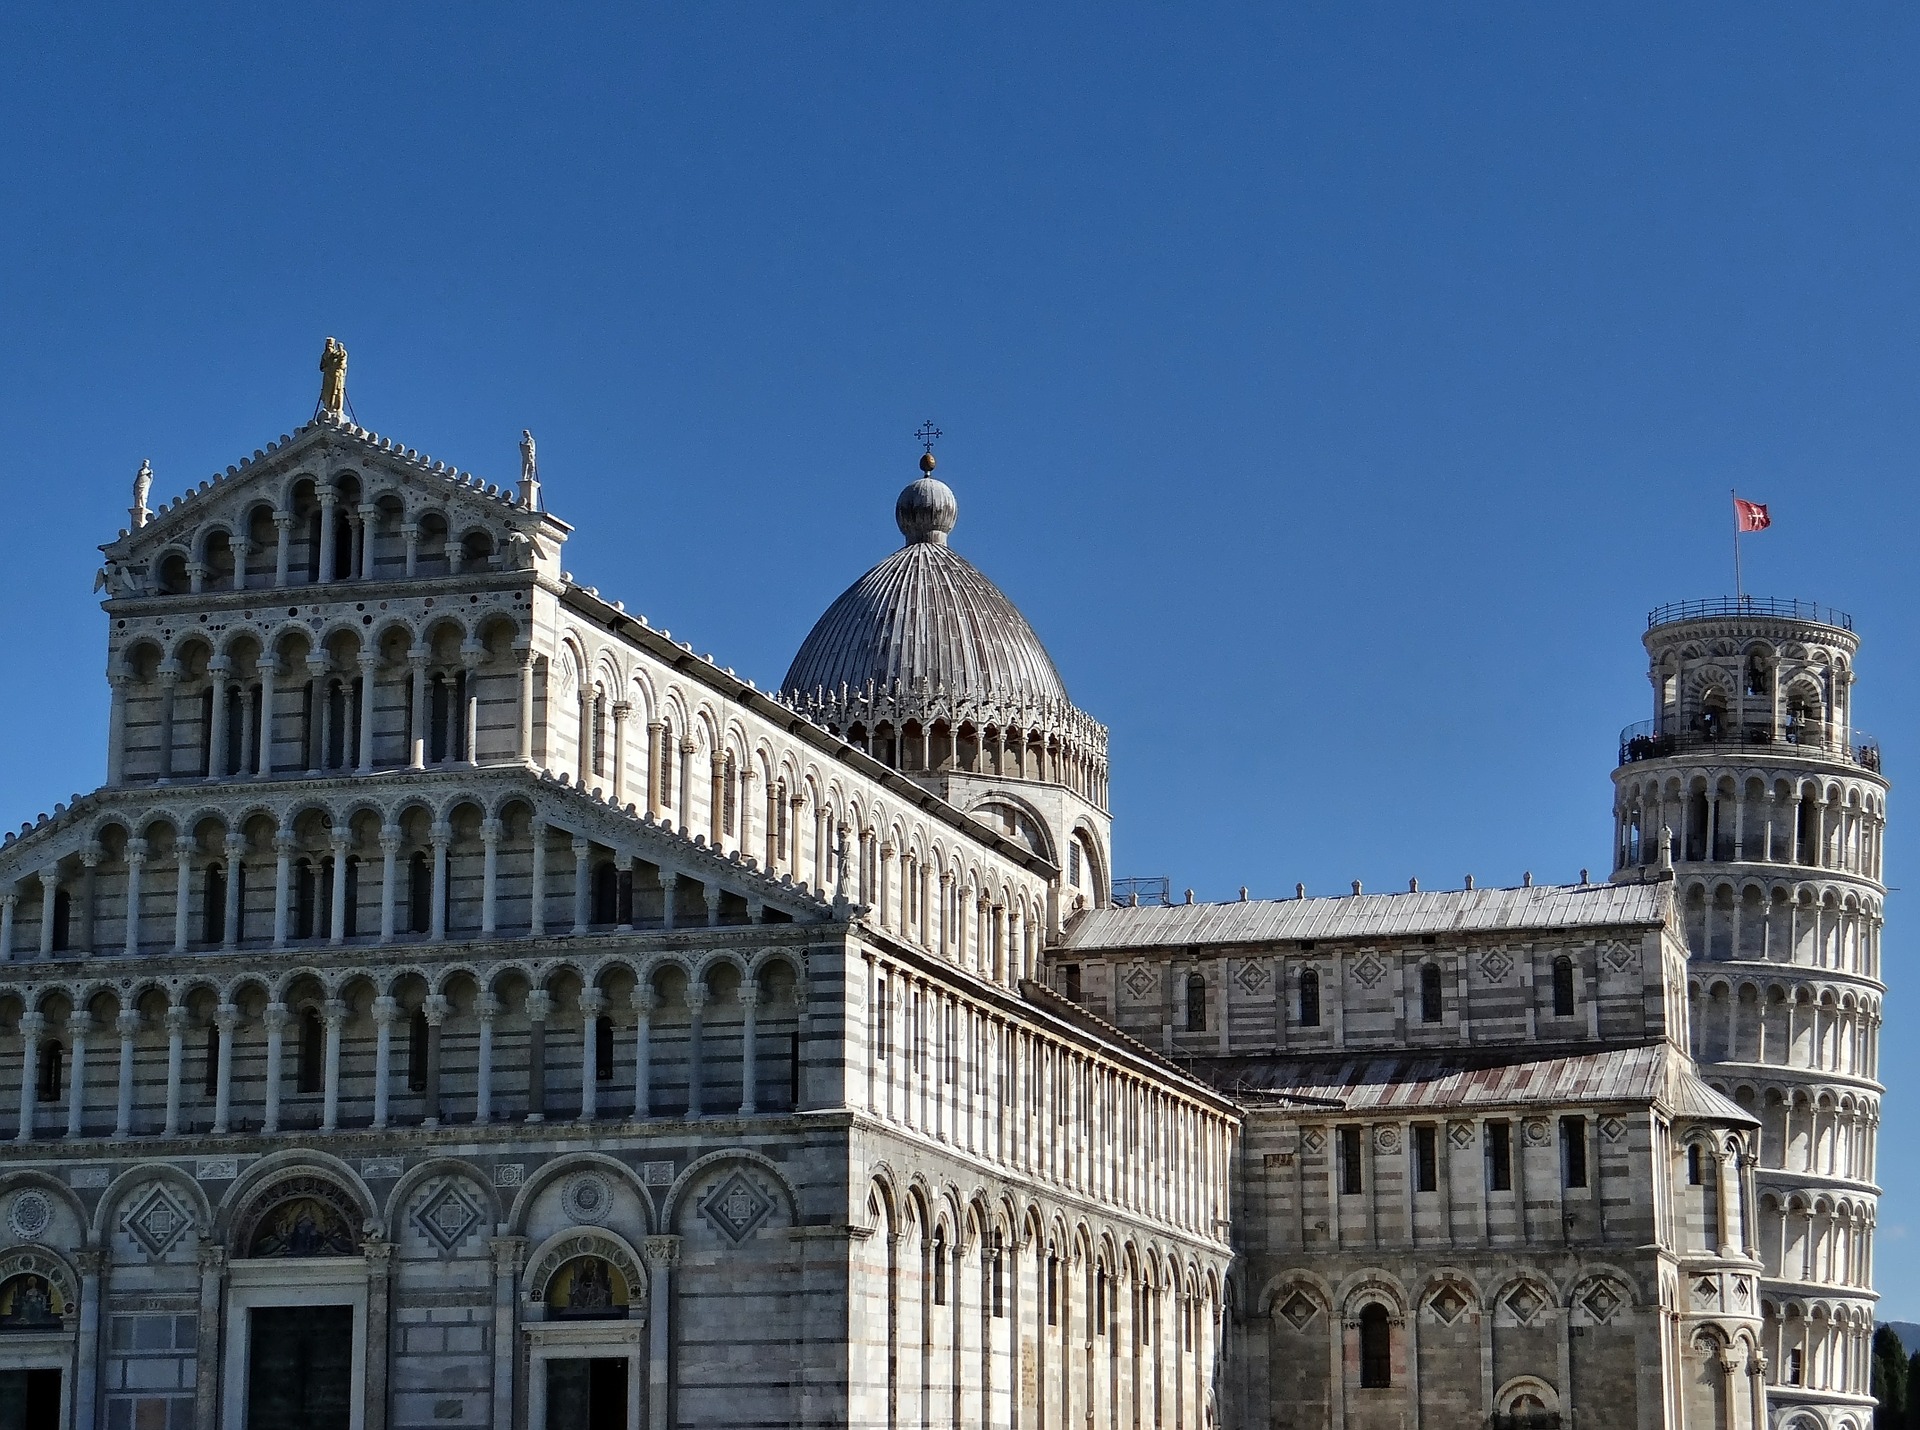 Pisa, non credo serva dire niente, è conosciuta in tutto il mondo per la sua famosissima torre pendente. Sta a nemmeno un'ora di macchina. Suggerisco di fare anche un giro sul lung'Arno, specialmente nel periodo della "Luminaria".